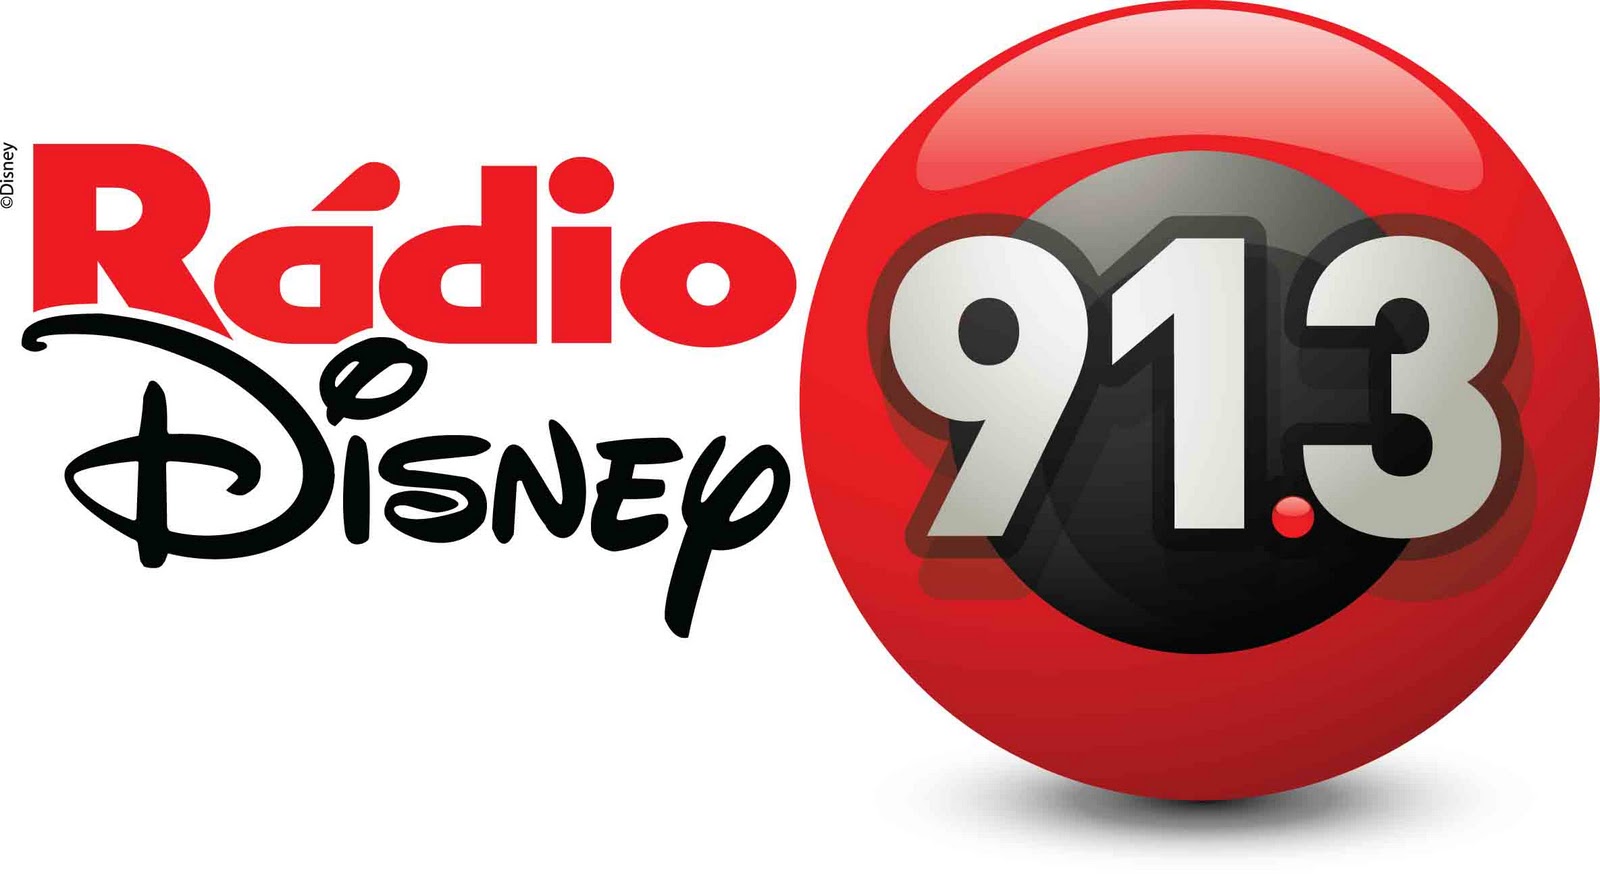 Radio Disney a Radio que te ouve